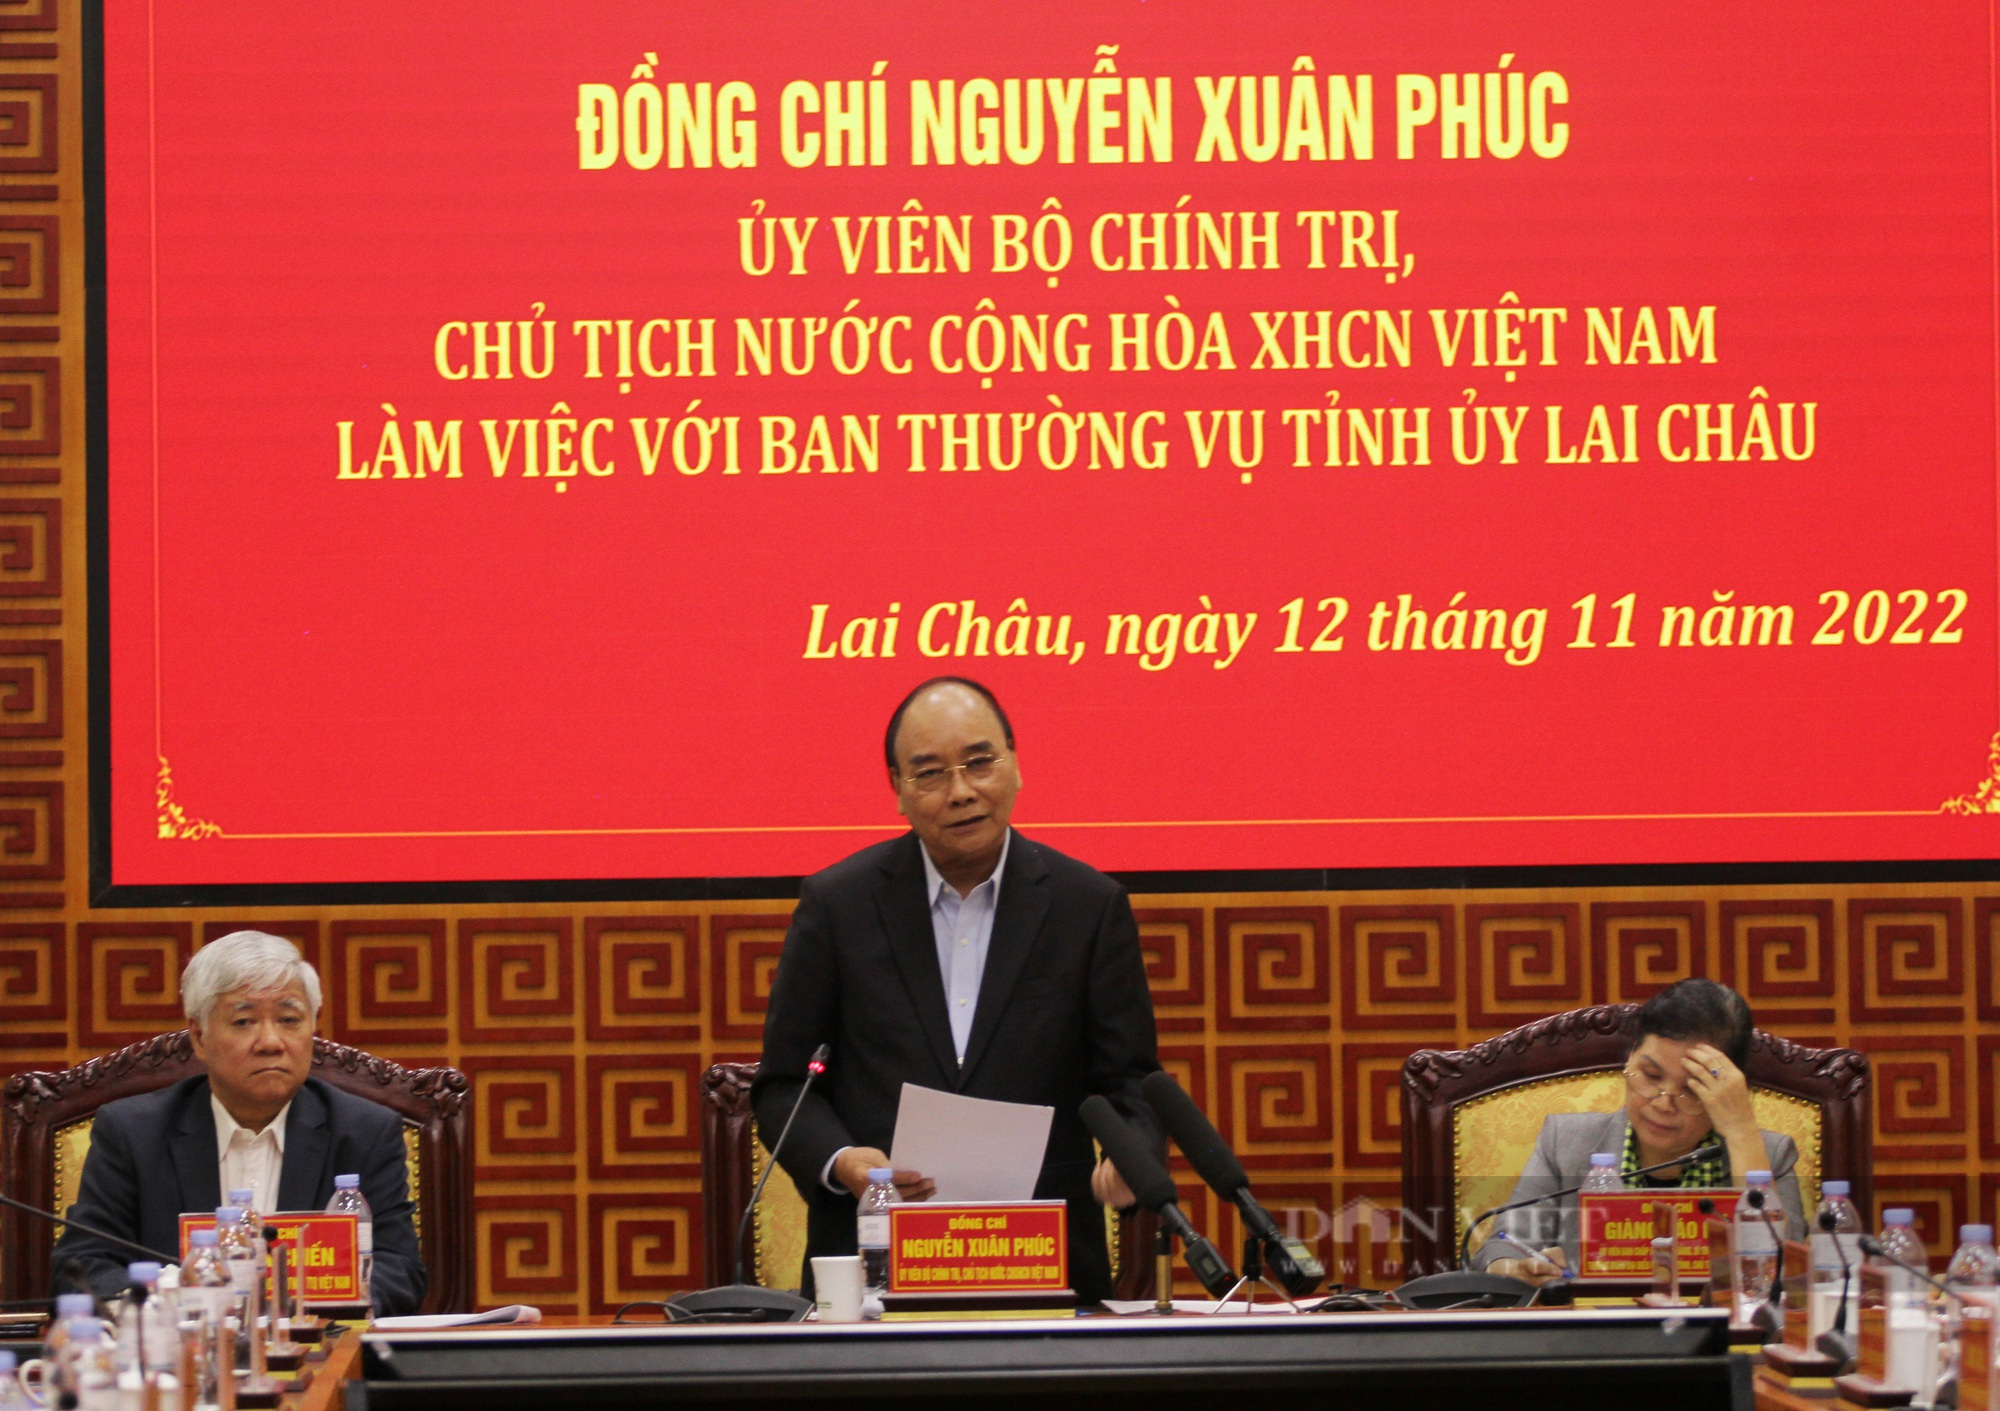 Chủ tịch nước Nguyễn Xuân Phúc làm việc với Ban Thường vụ Tỉnh ủy Lai Châu - Ảnh 5.